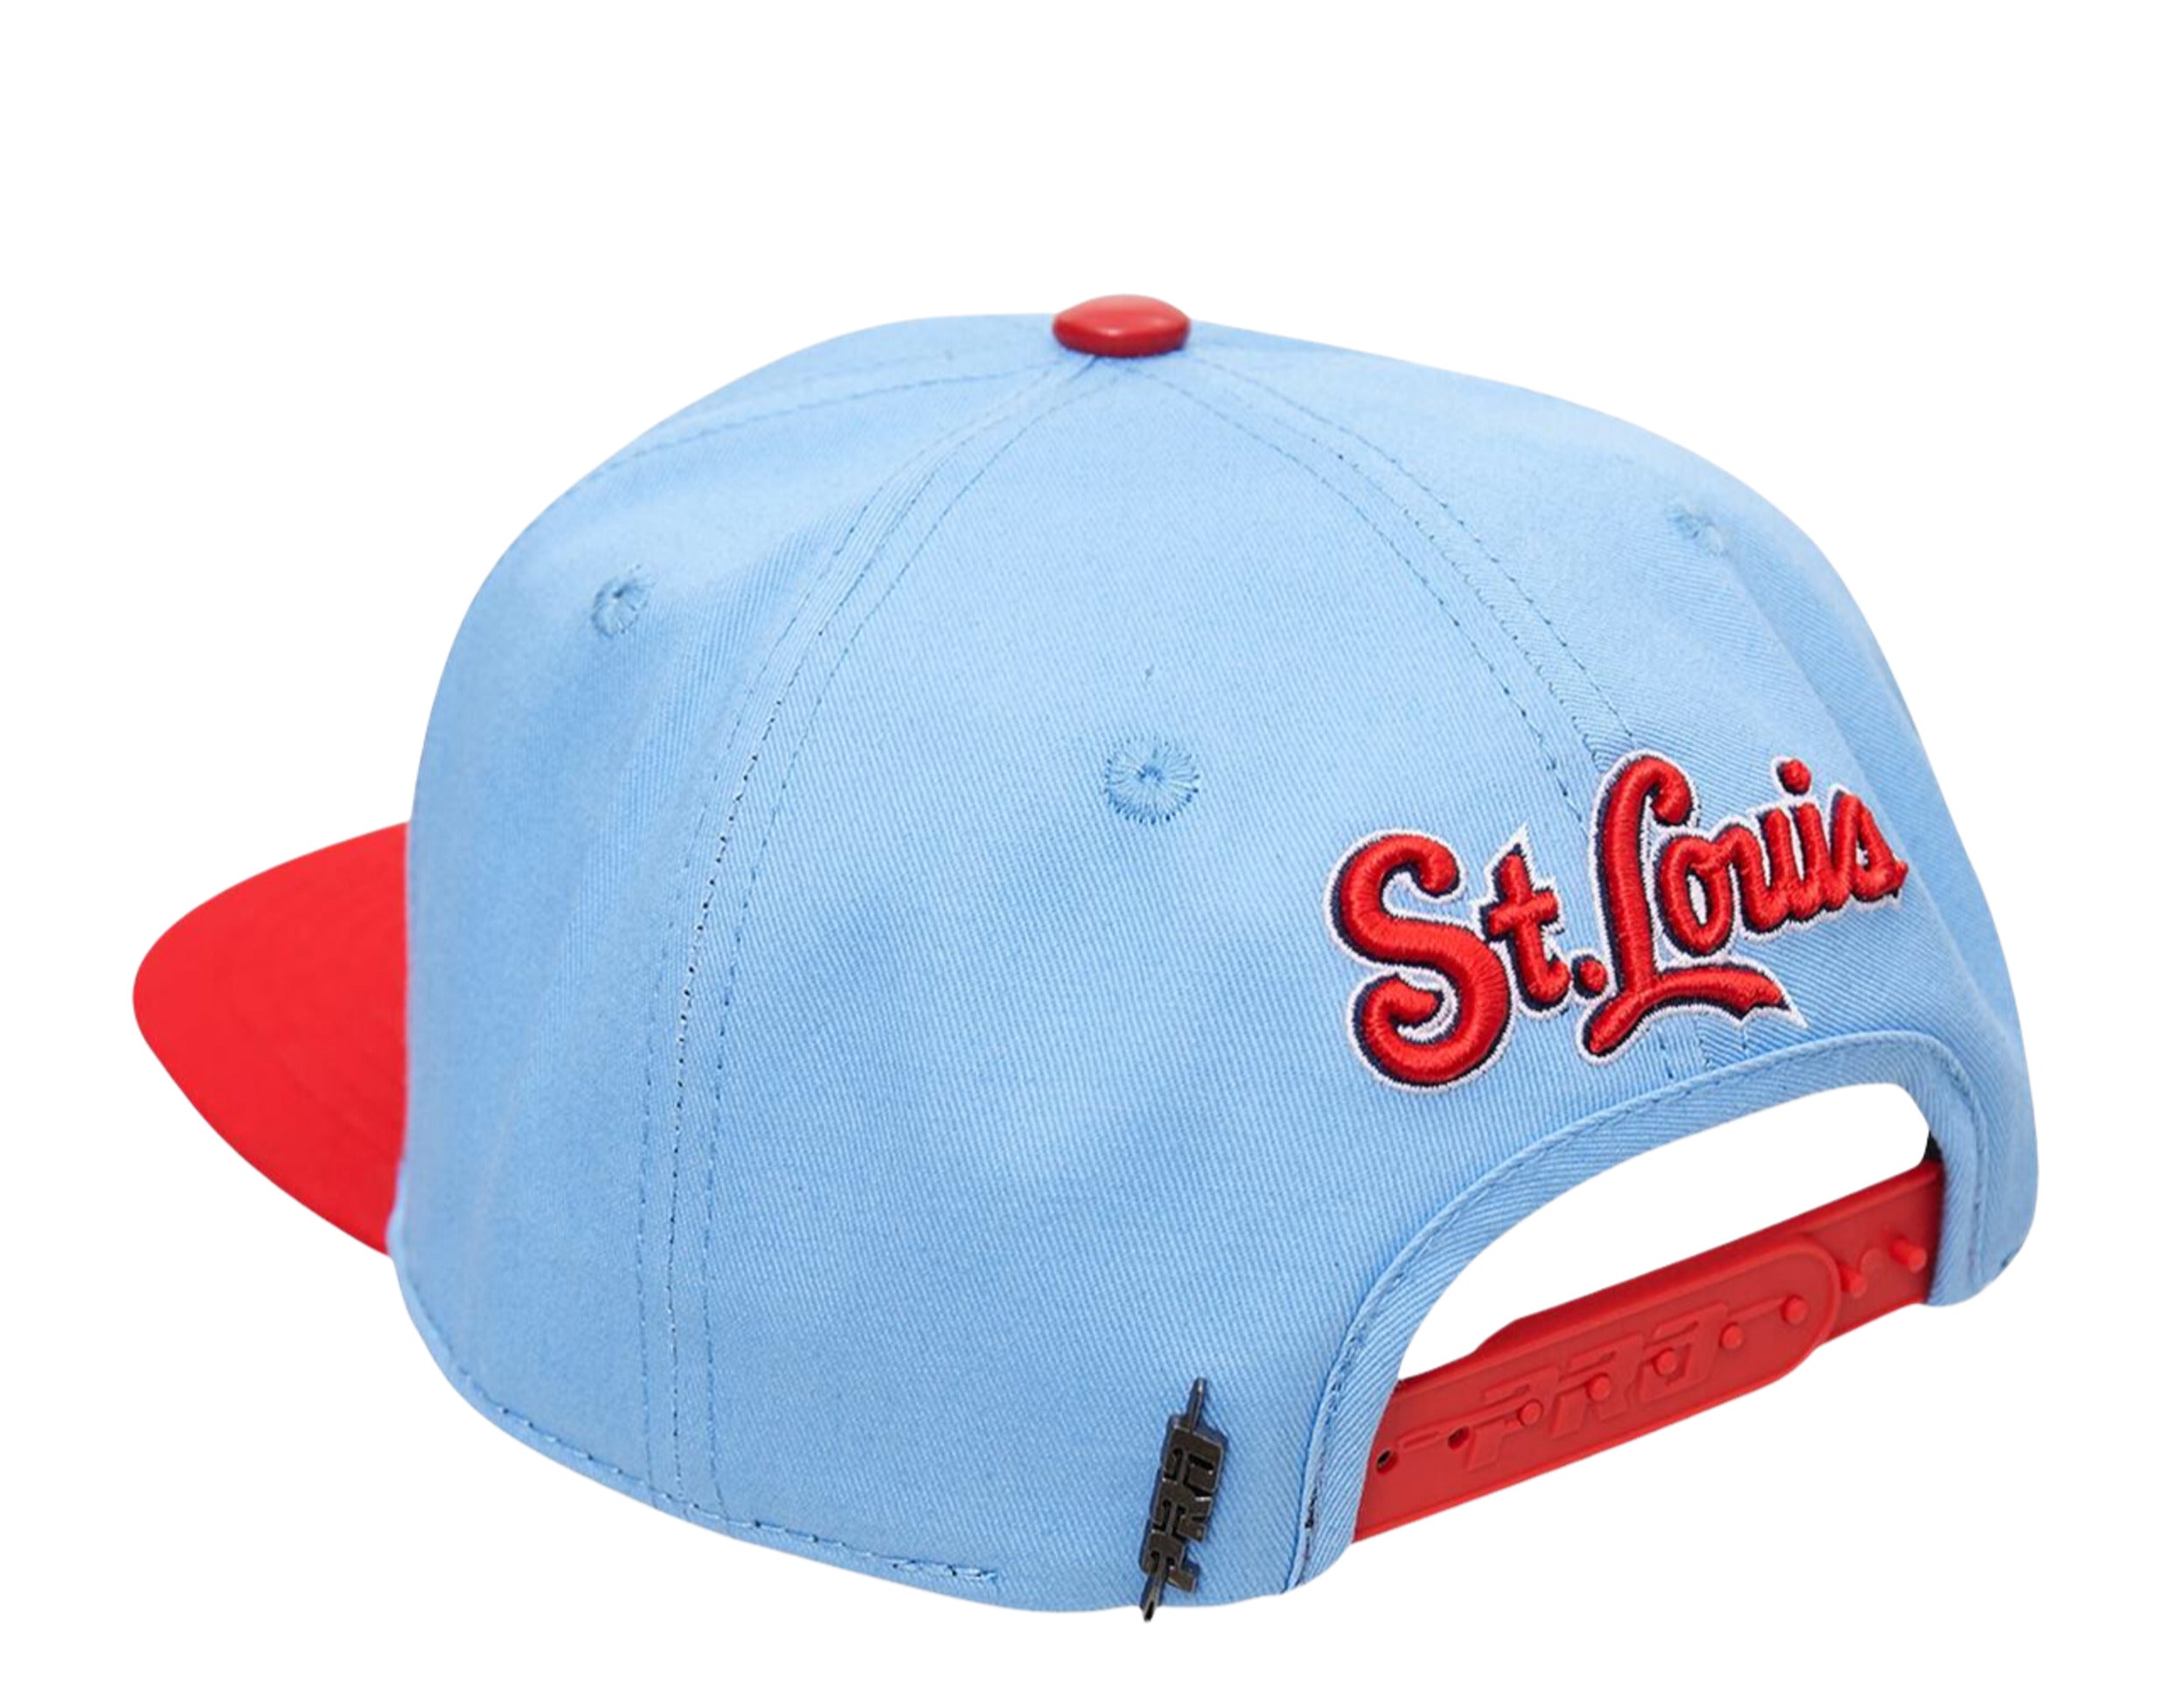 Pro Standard Men's Light Blue St. Louis Cardinals Ship T-shirt, Fan Shop